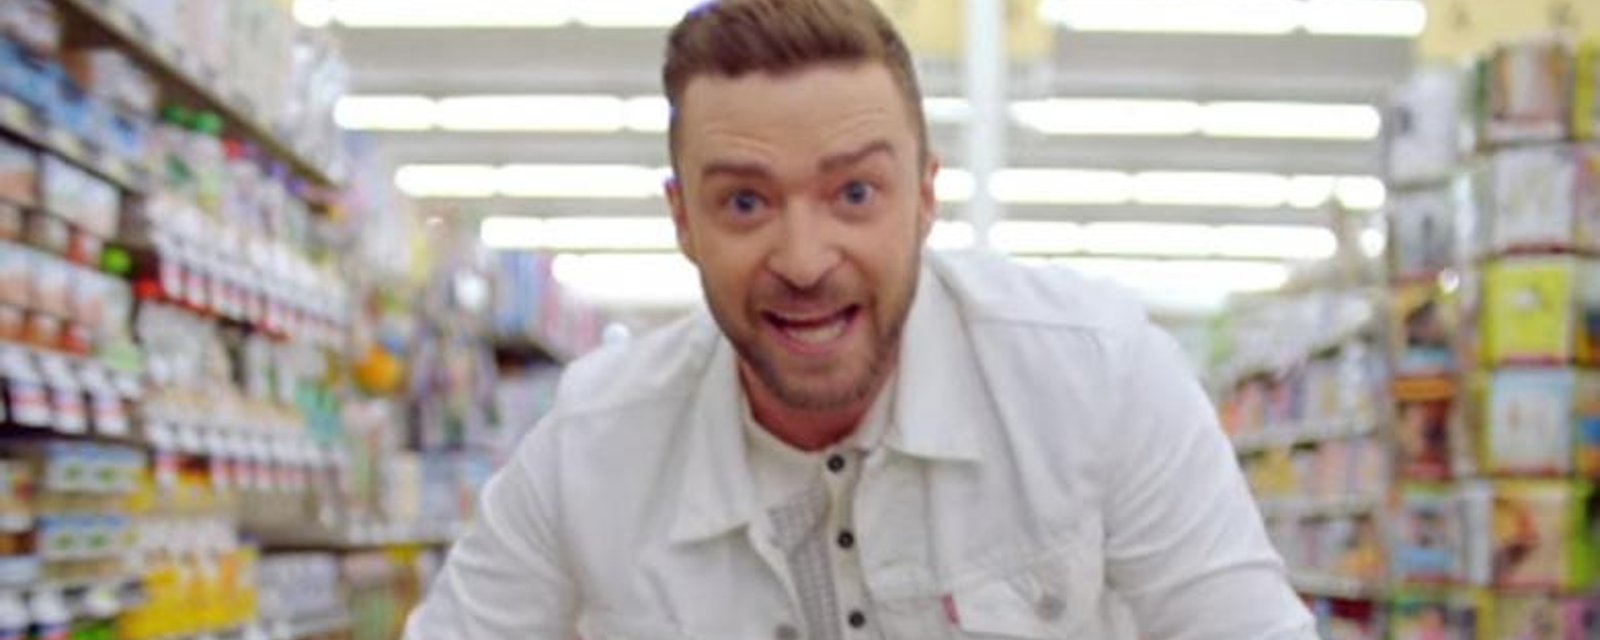 Justin Timberlake annonce une GROSSE nouvelle qui va faire bien des heureux!